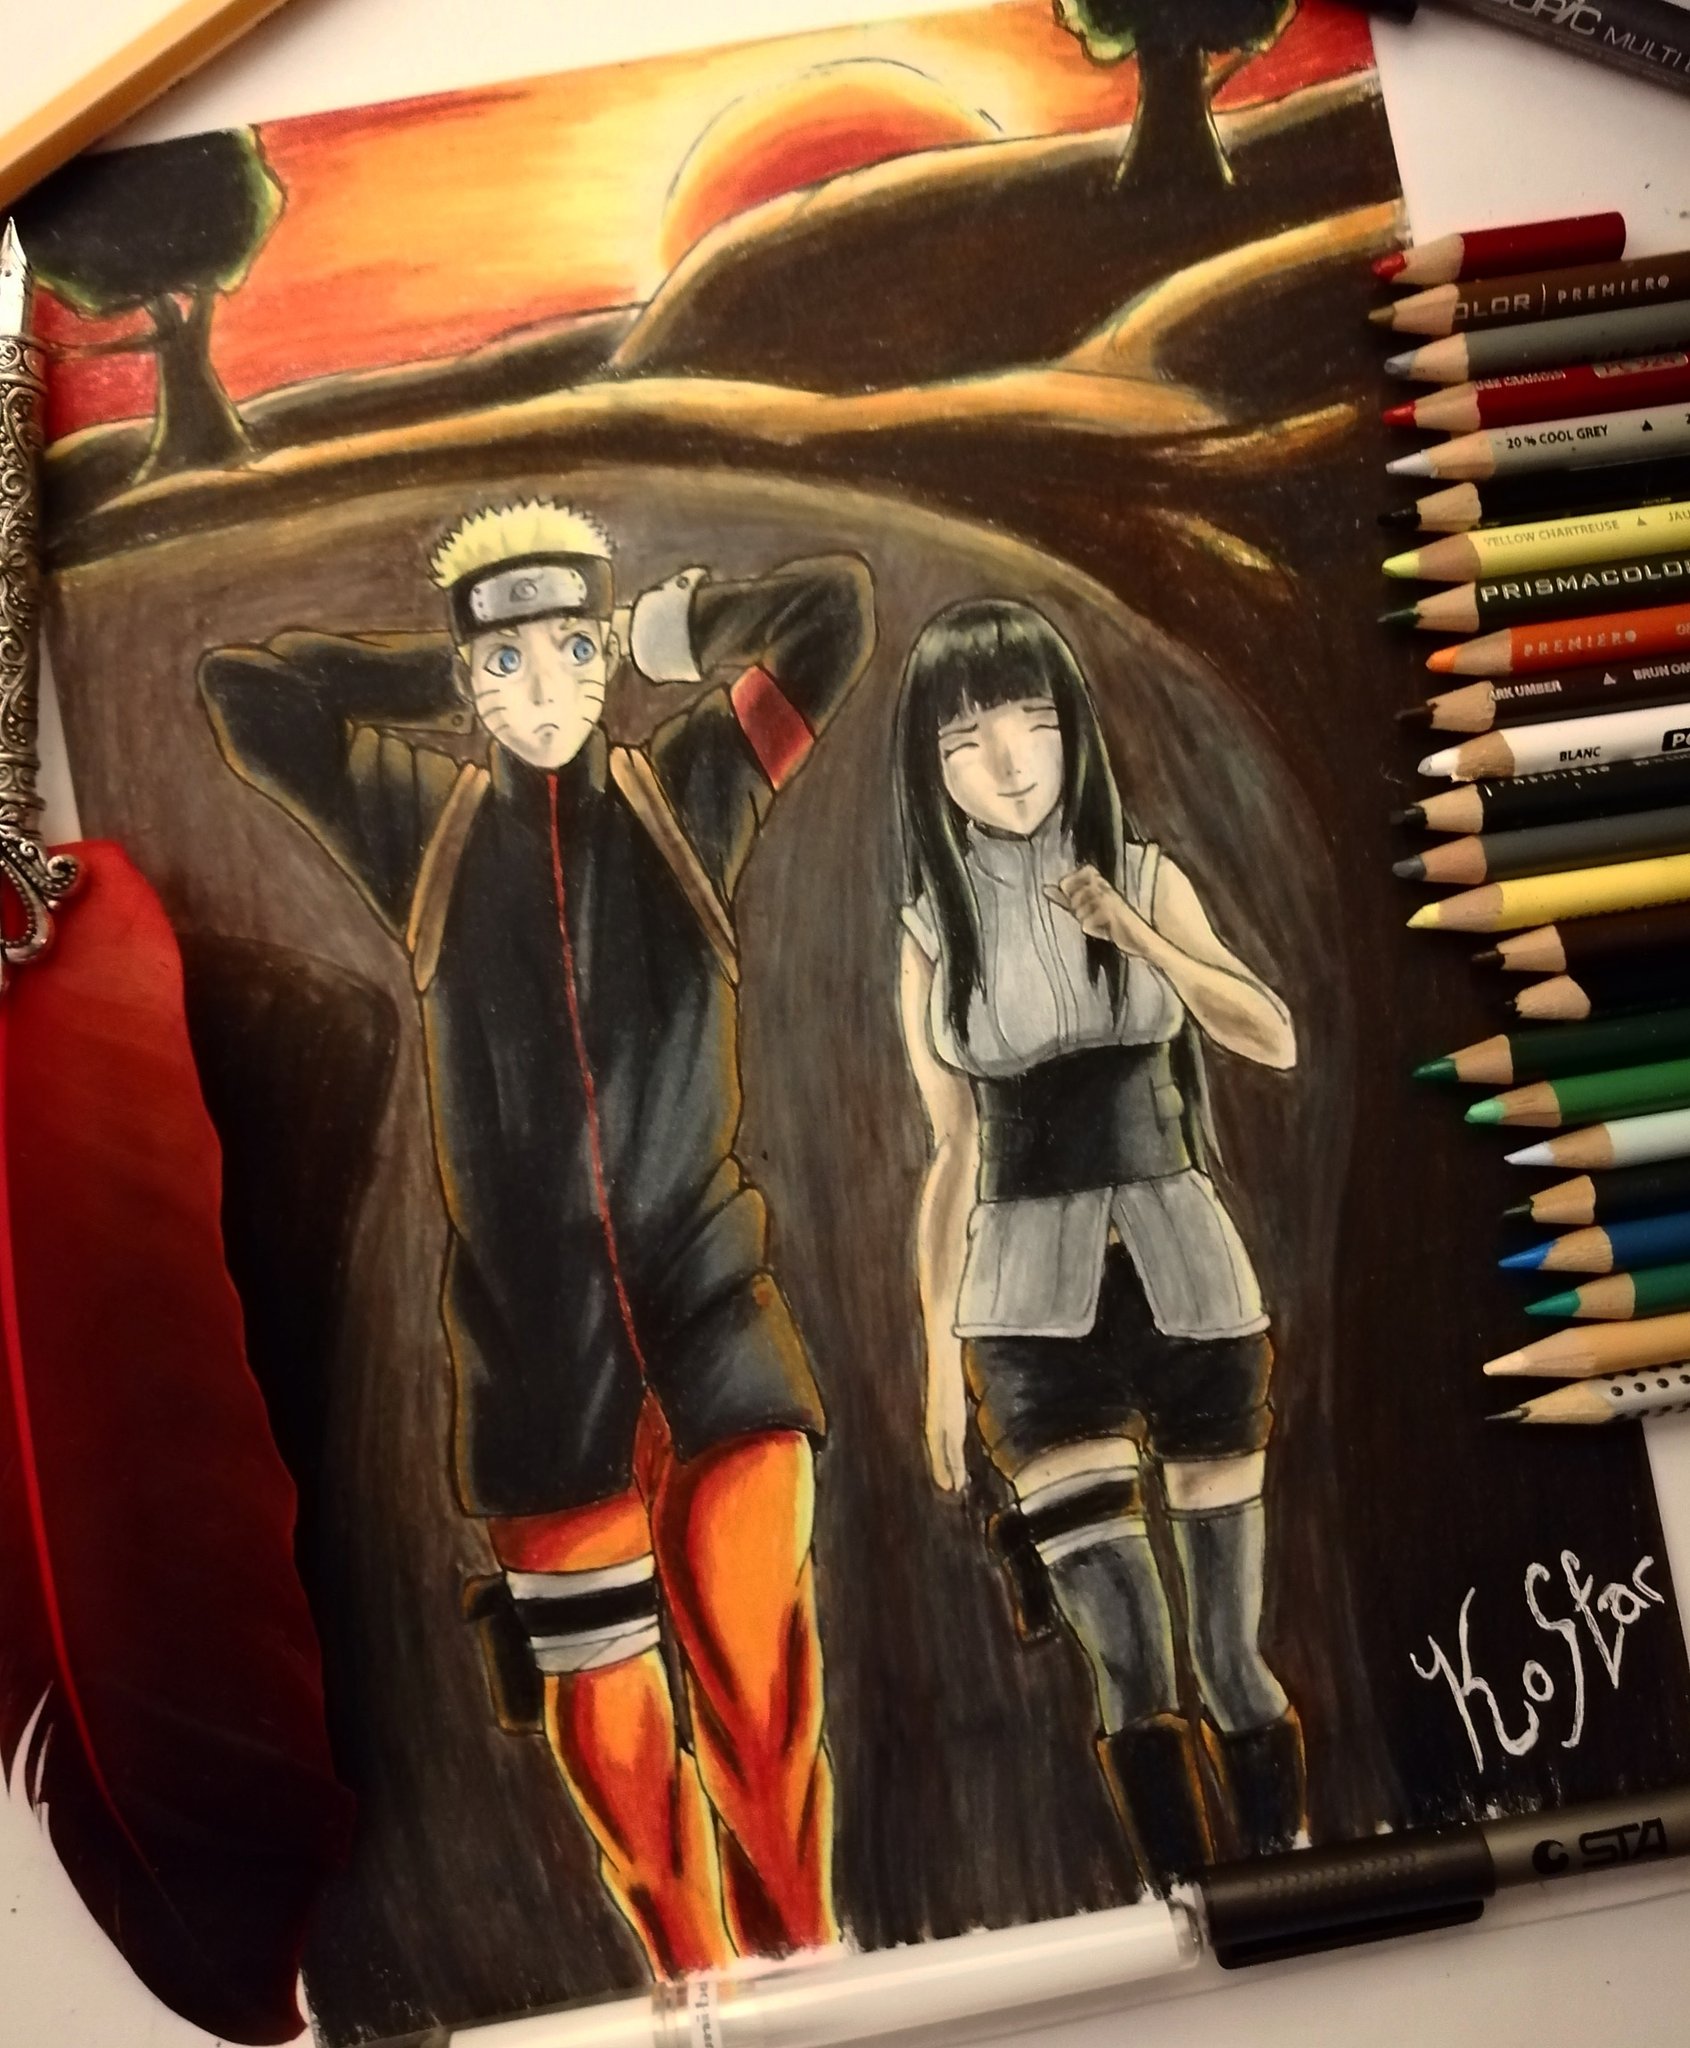 Naruto and Hinata Karce (カルセ) - Illustrations ART street